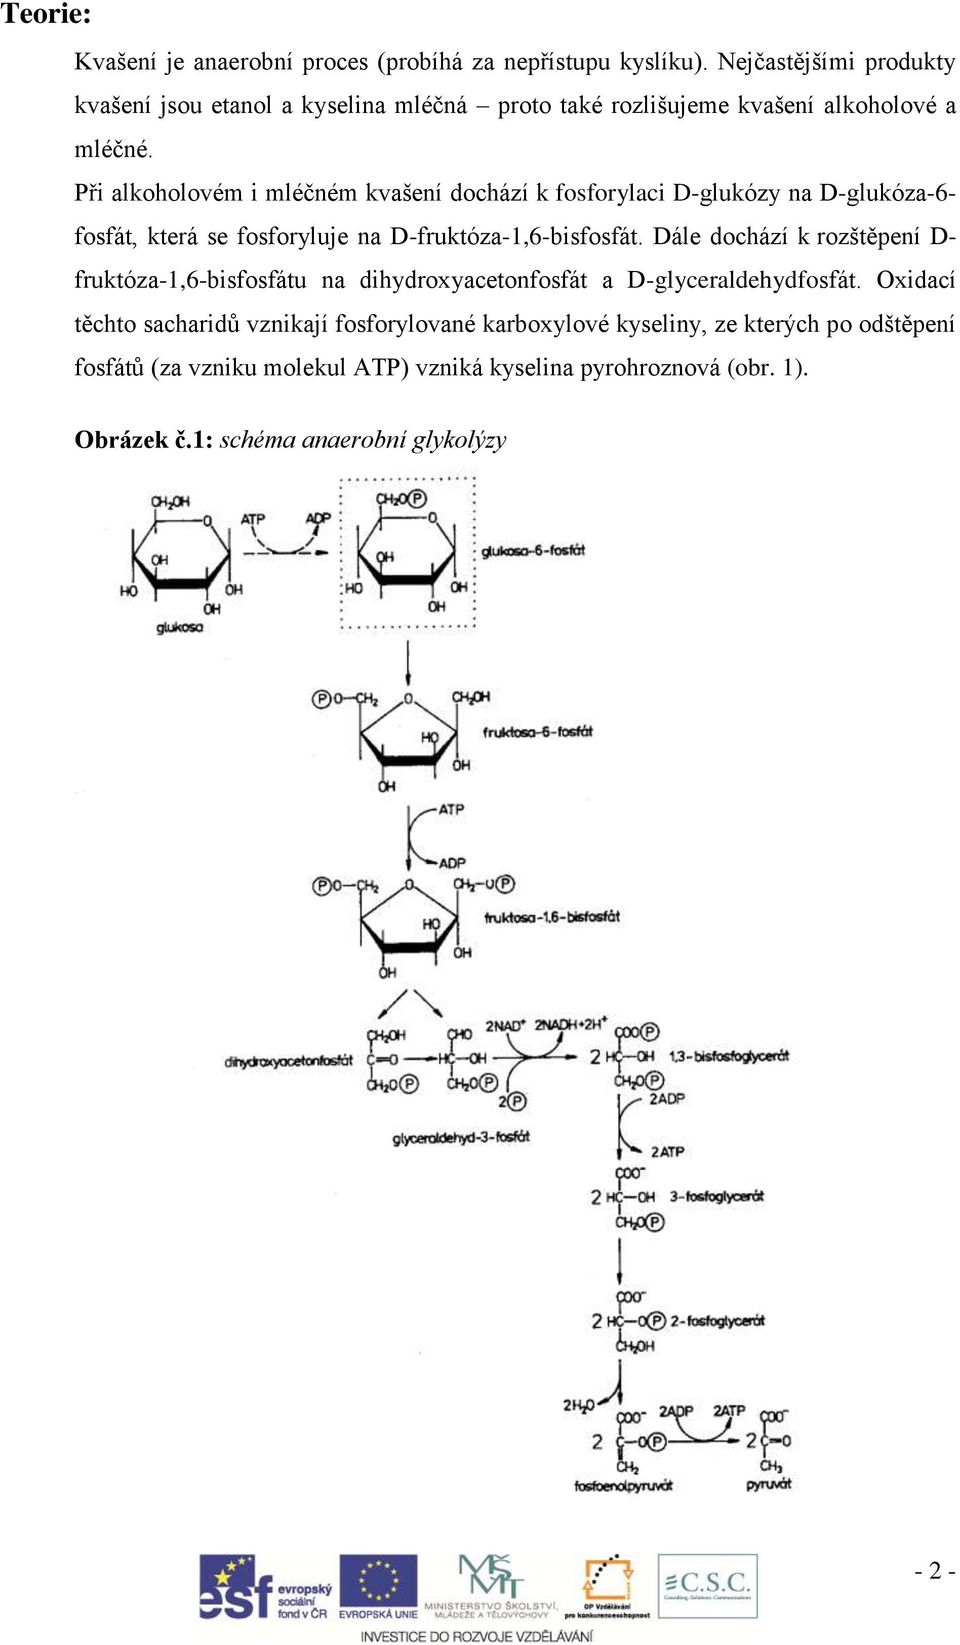 Při alkoholovém i mléčném kvašení dochází k fosforylaci D-glukózy na D-glukóza-6- fosfát, která se fosforyluje na D-fruktóza-1,6-bisfosfát.